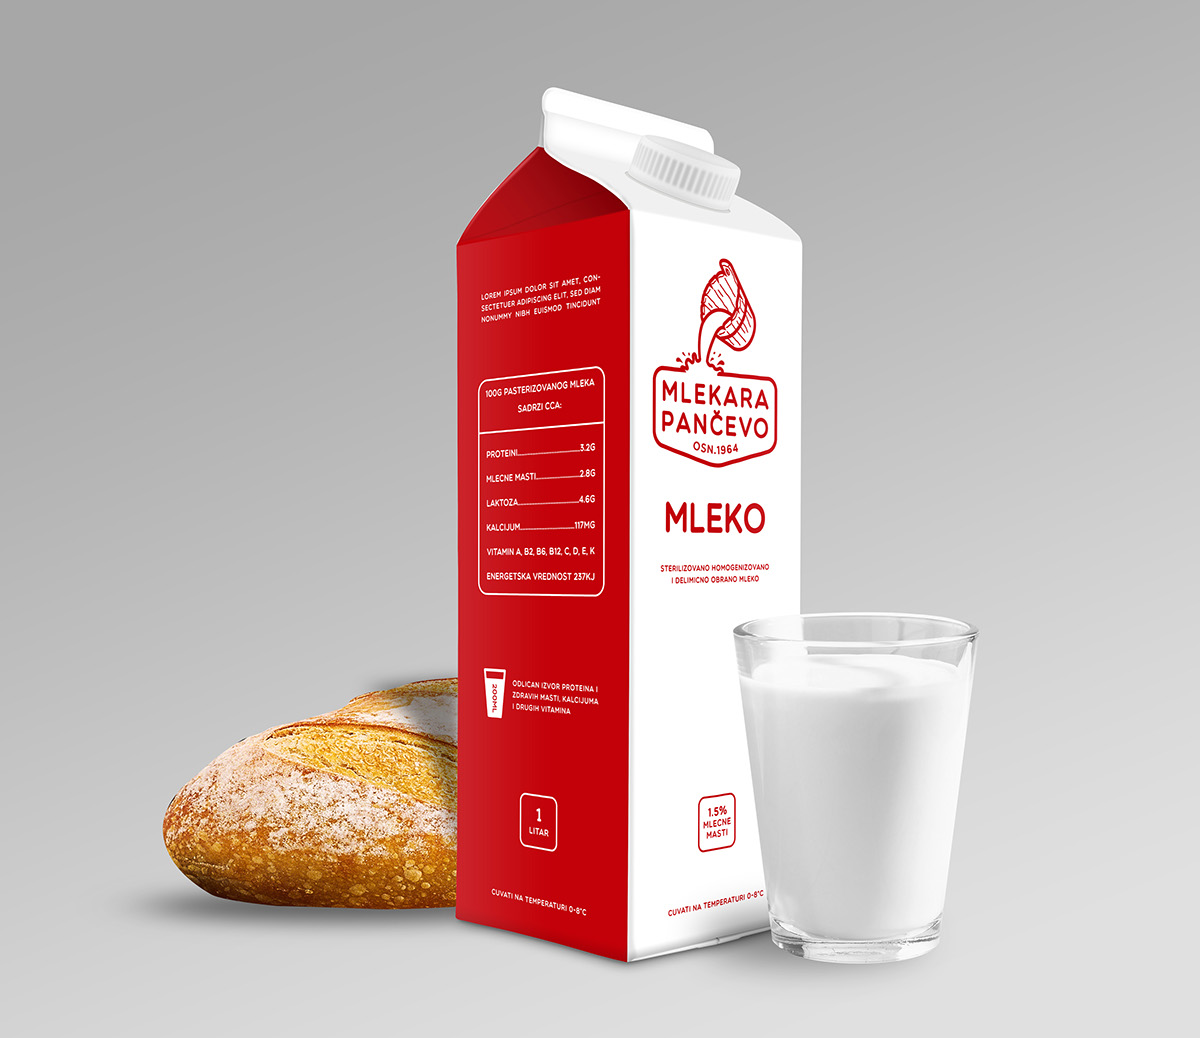 Dairy cow milk yogurt Kefir pancevo